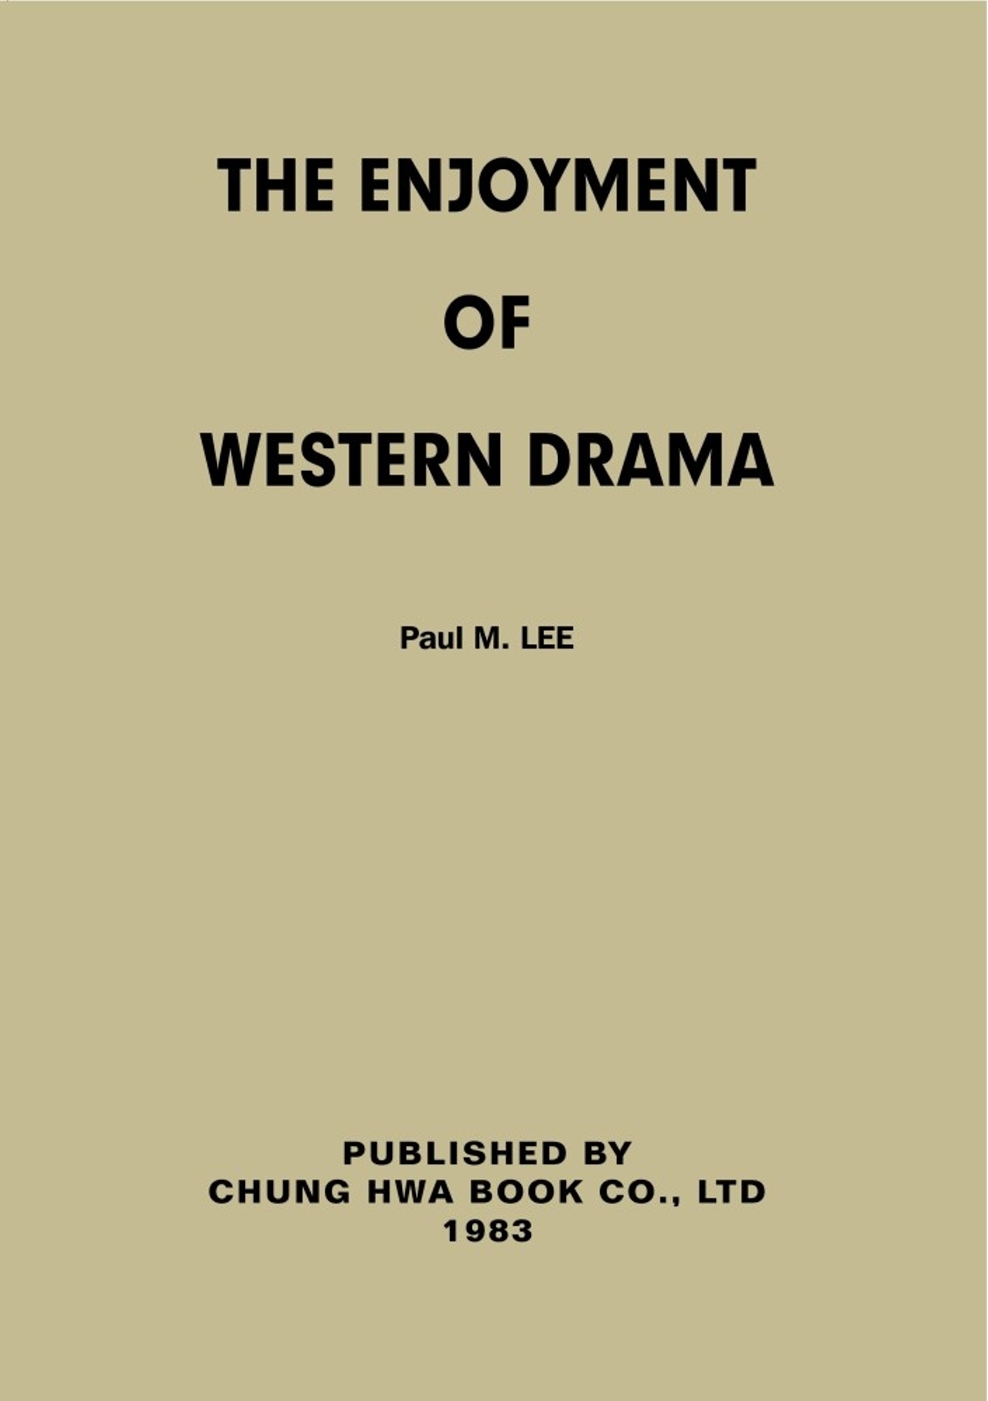 The Enjoyment of Western Drama